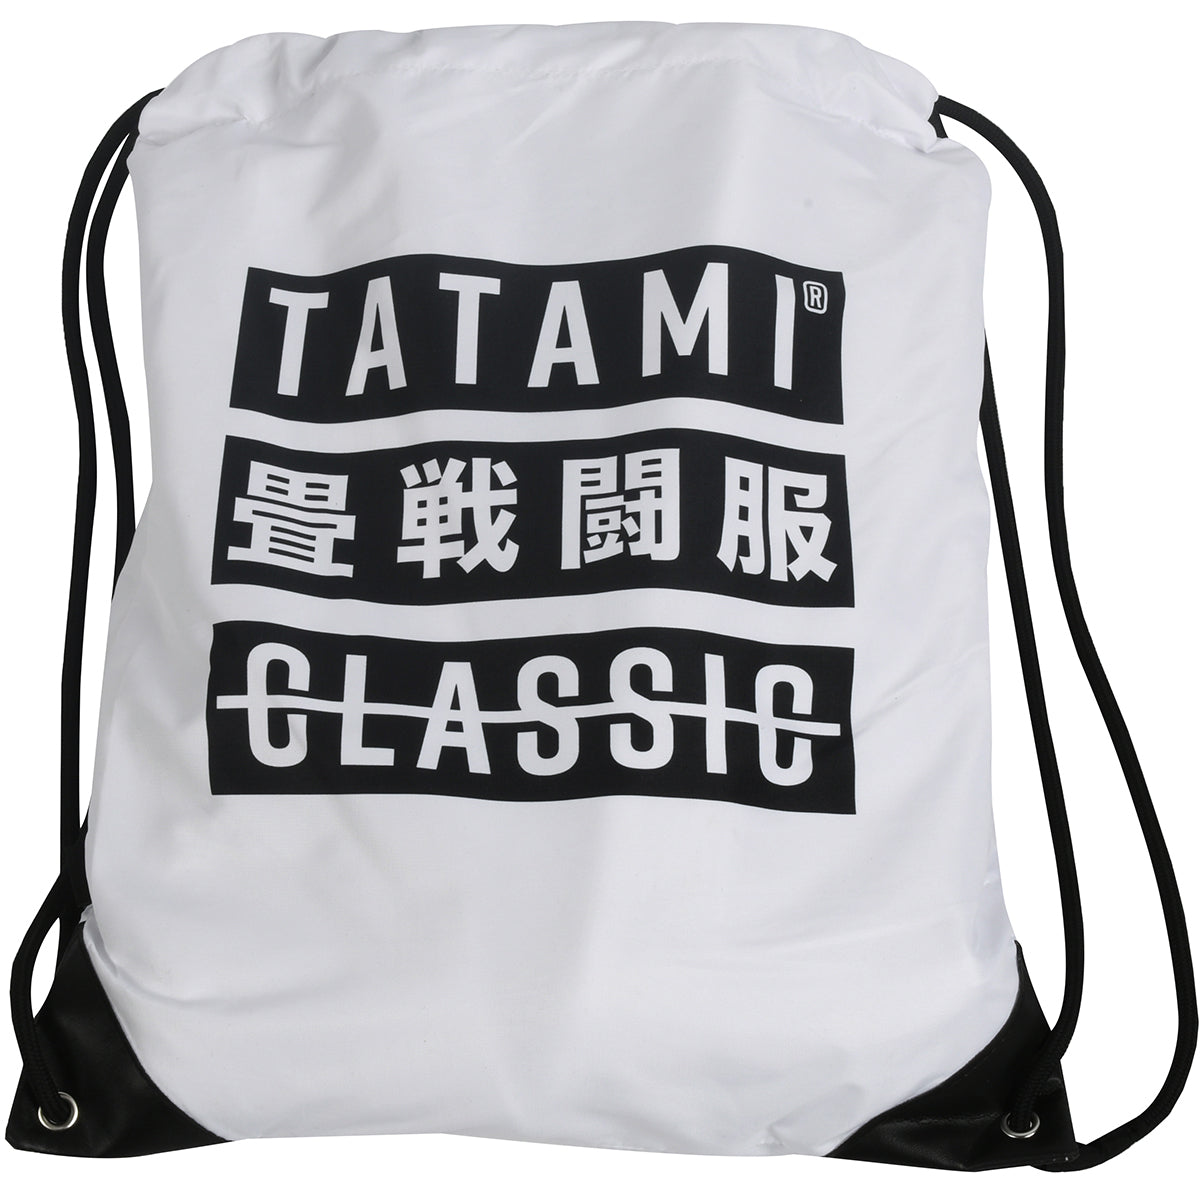 Tatami Fightwear Signature Classic BJJ Gi - White Tatami Fightwear